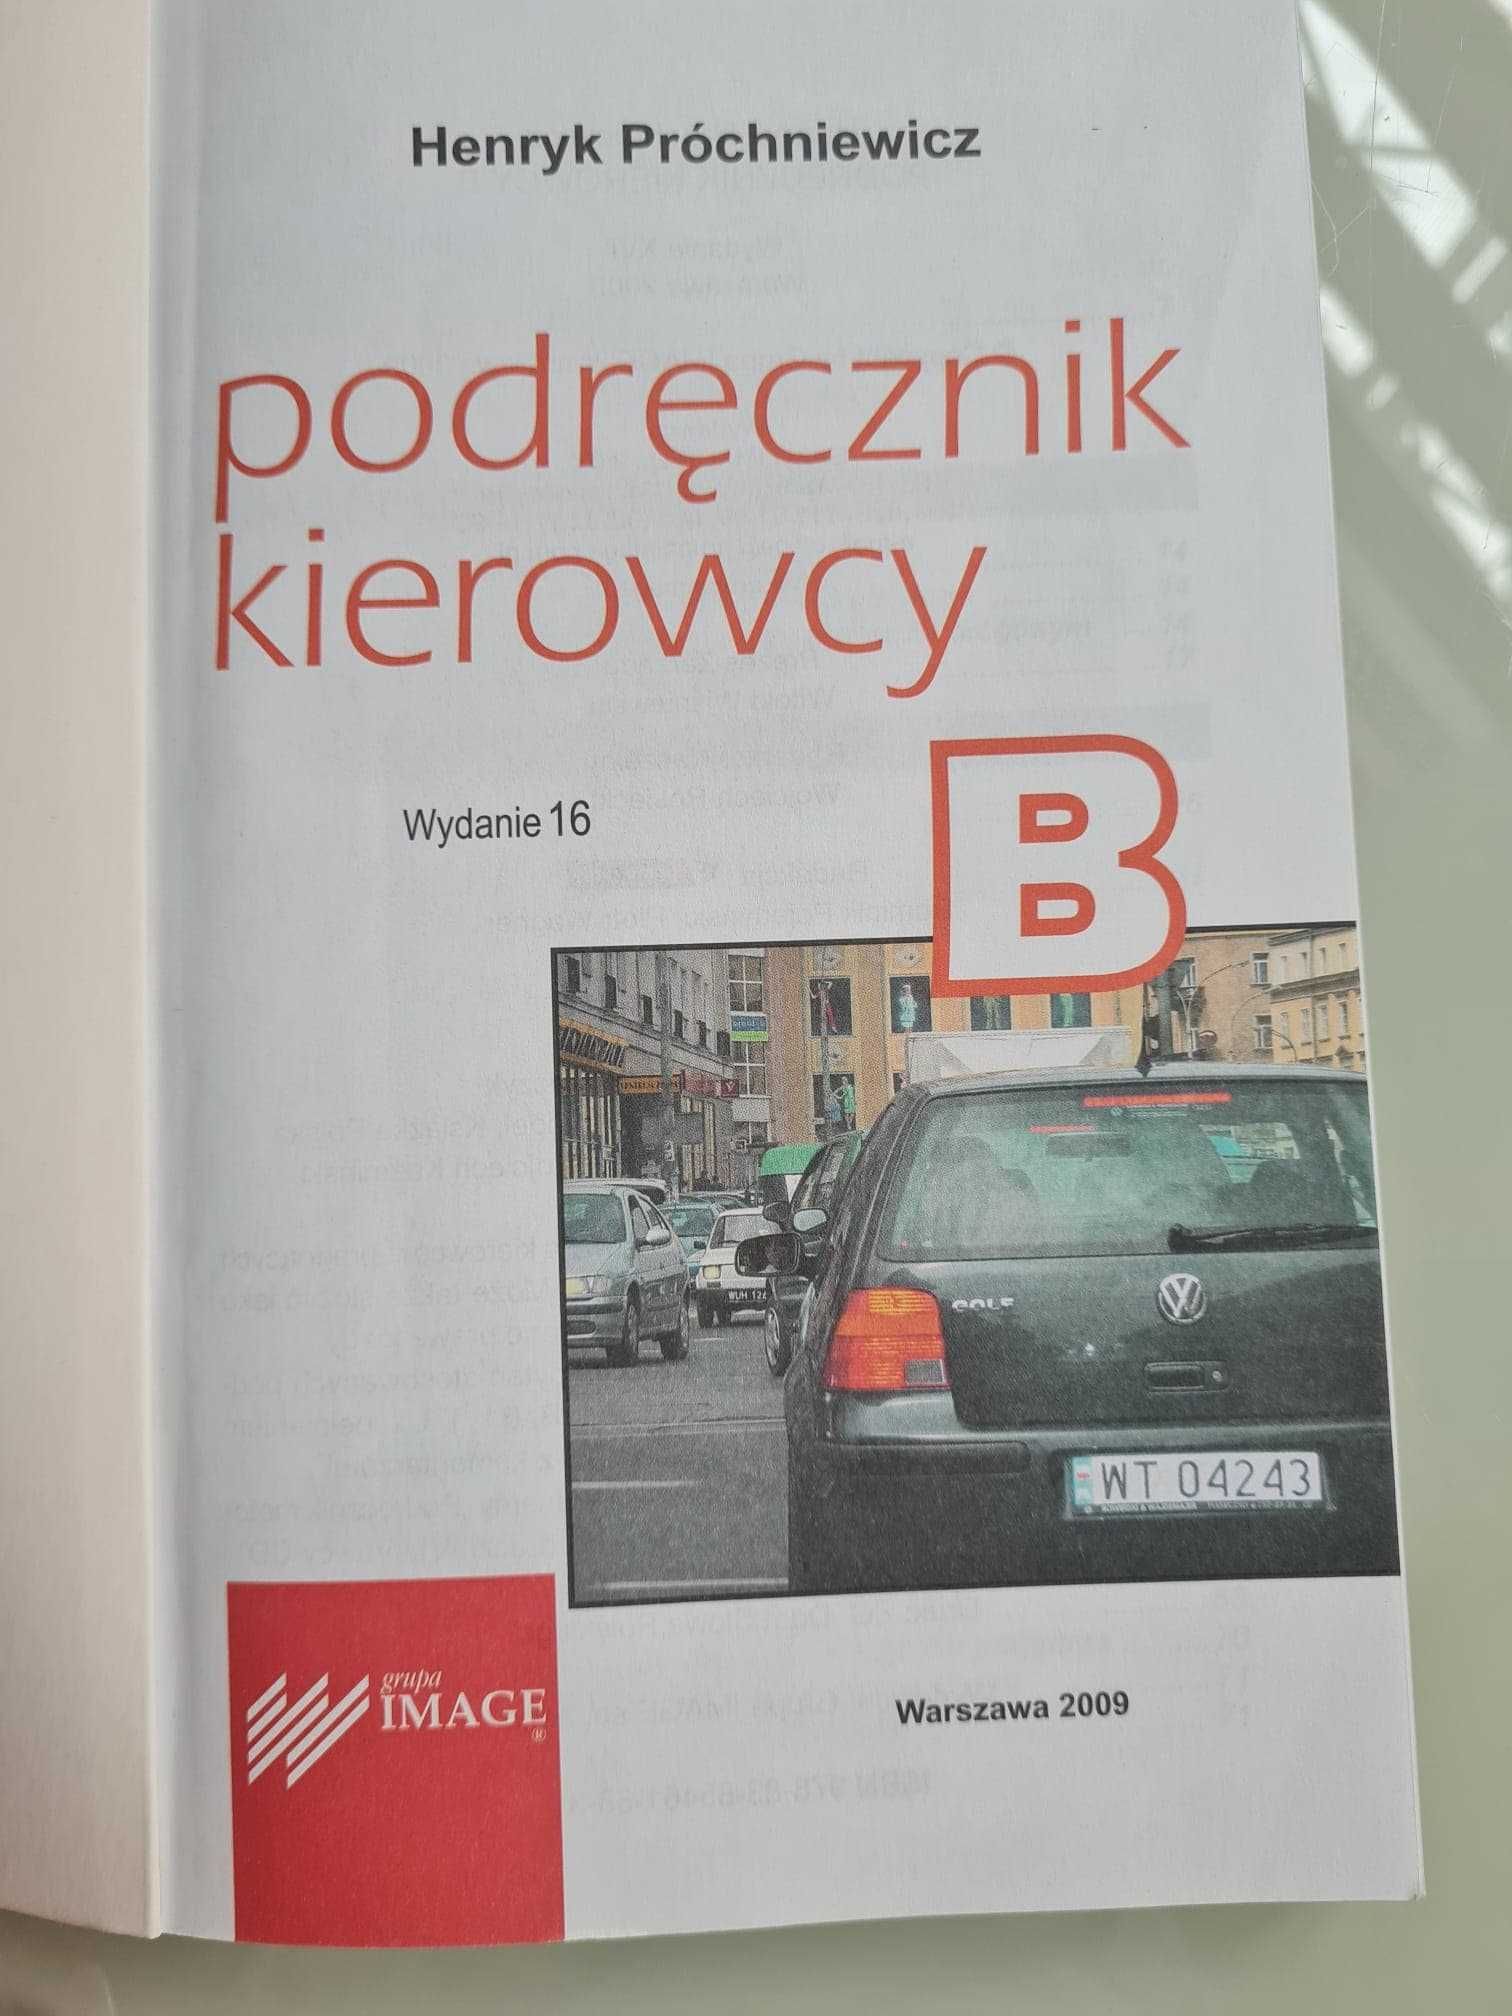 Podręcznik kierowcy kategoria B